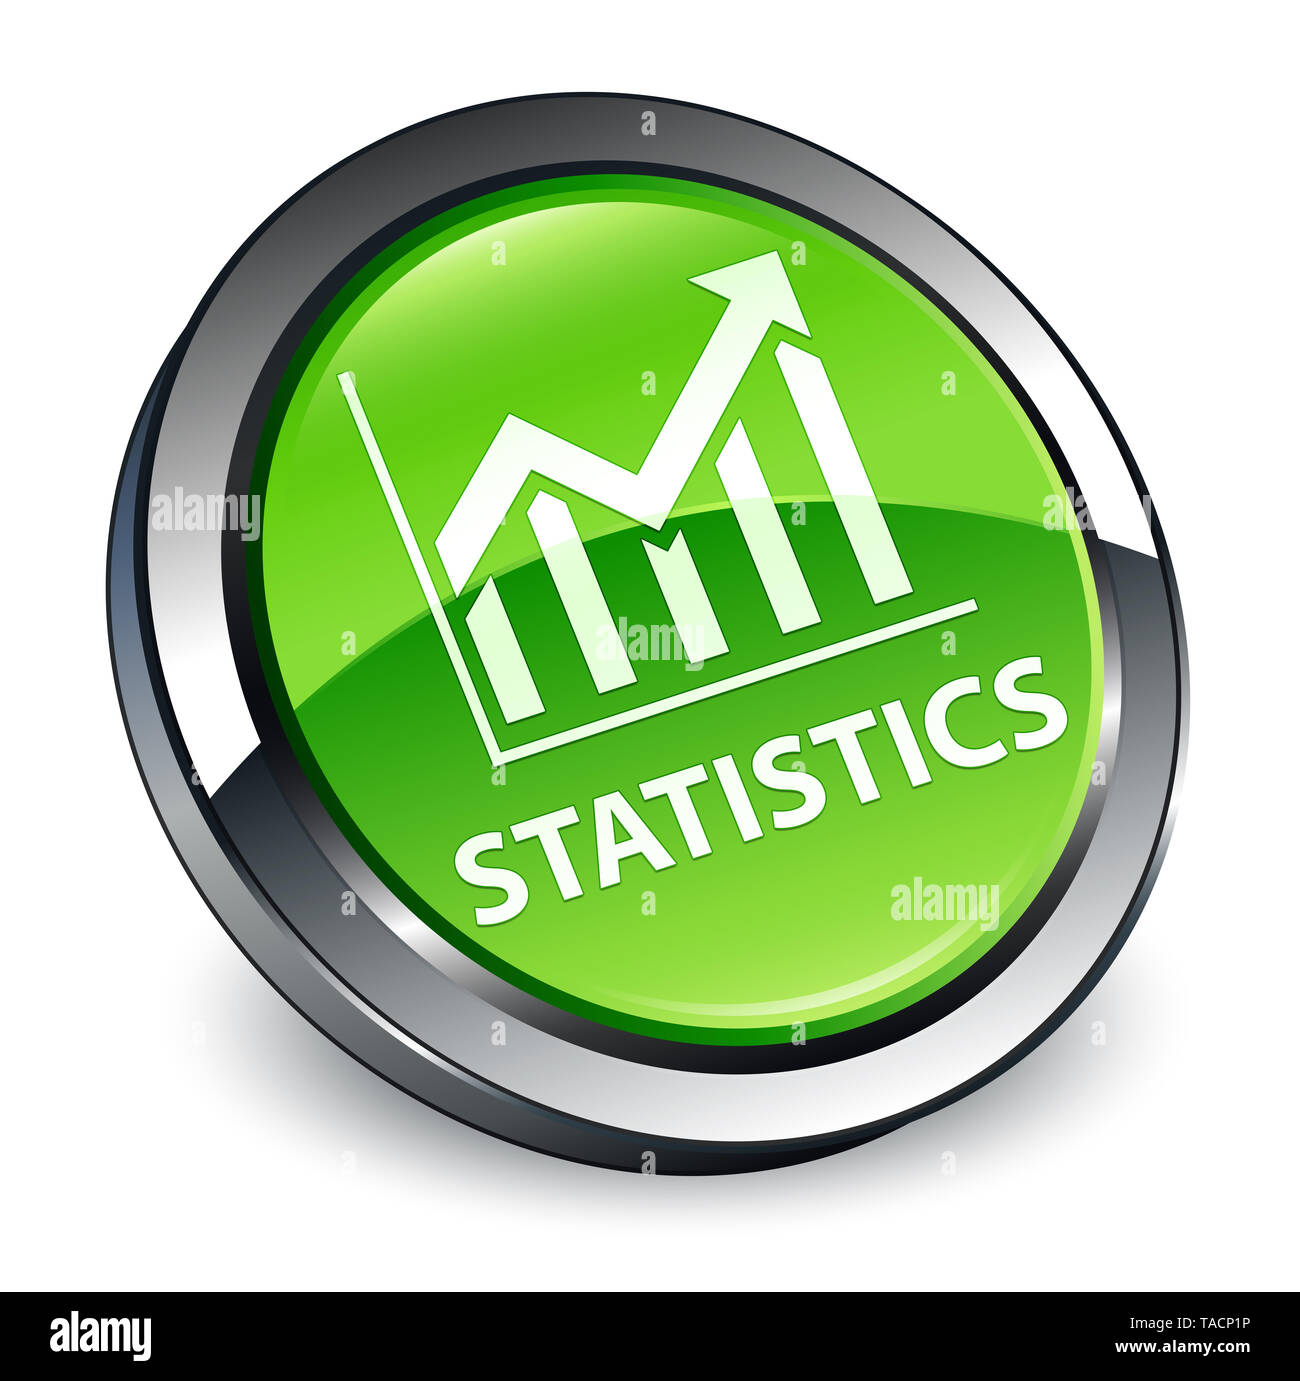 Statistiche isolati su 3d verde pulsante rotondo illustrazione astratta Foto Stock